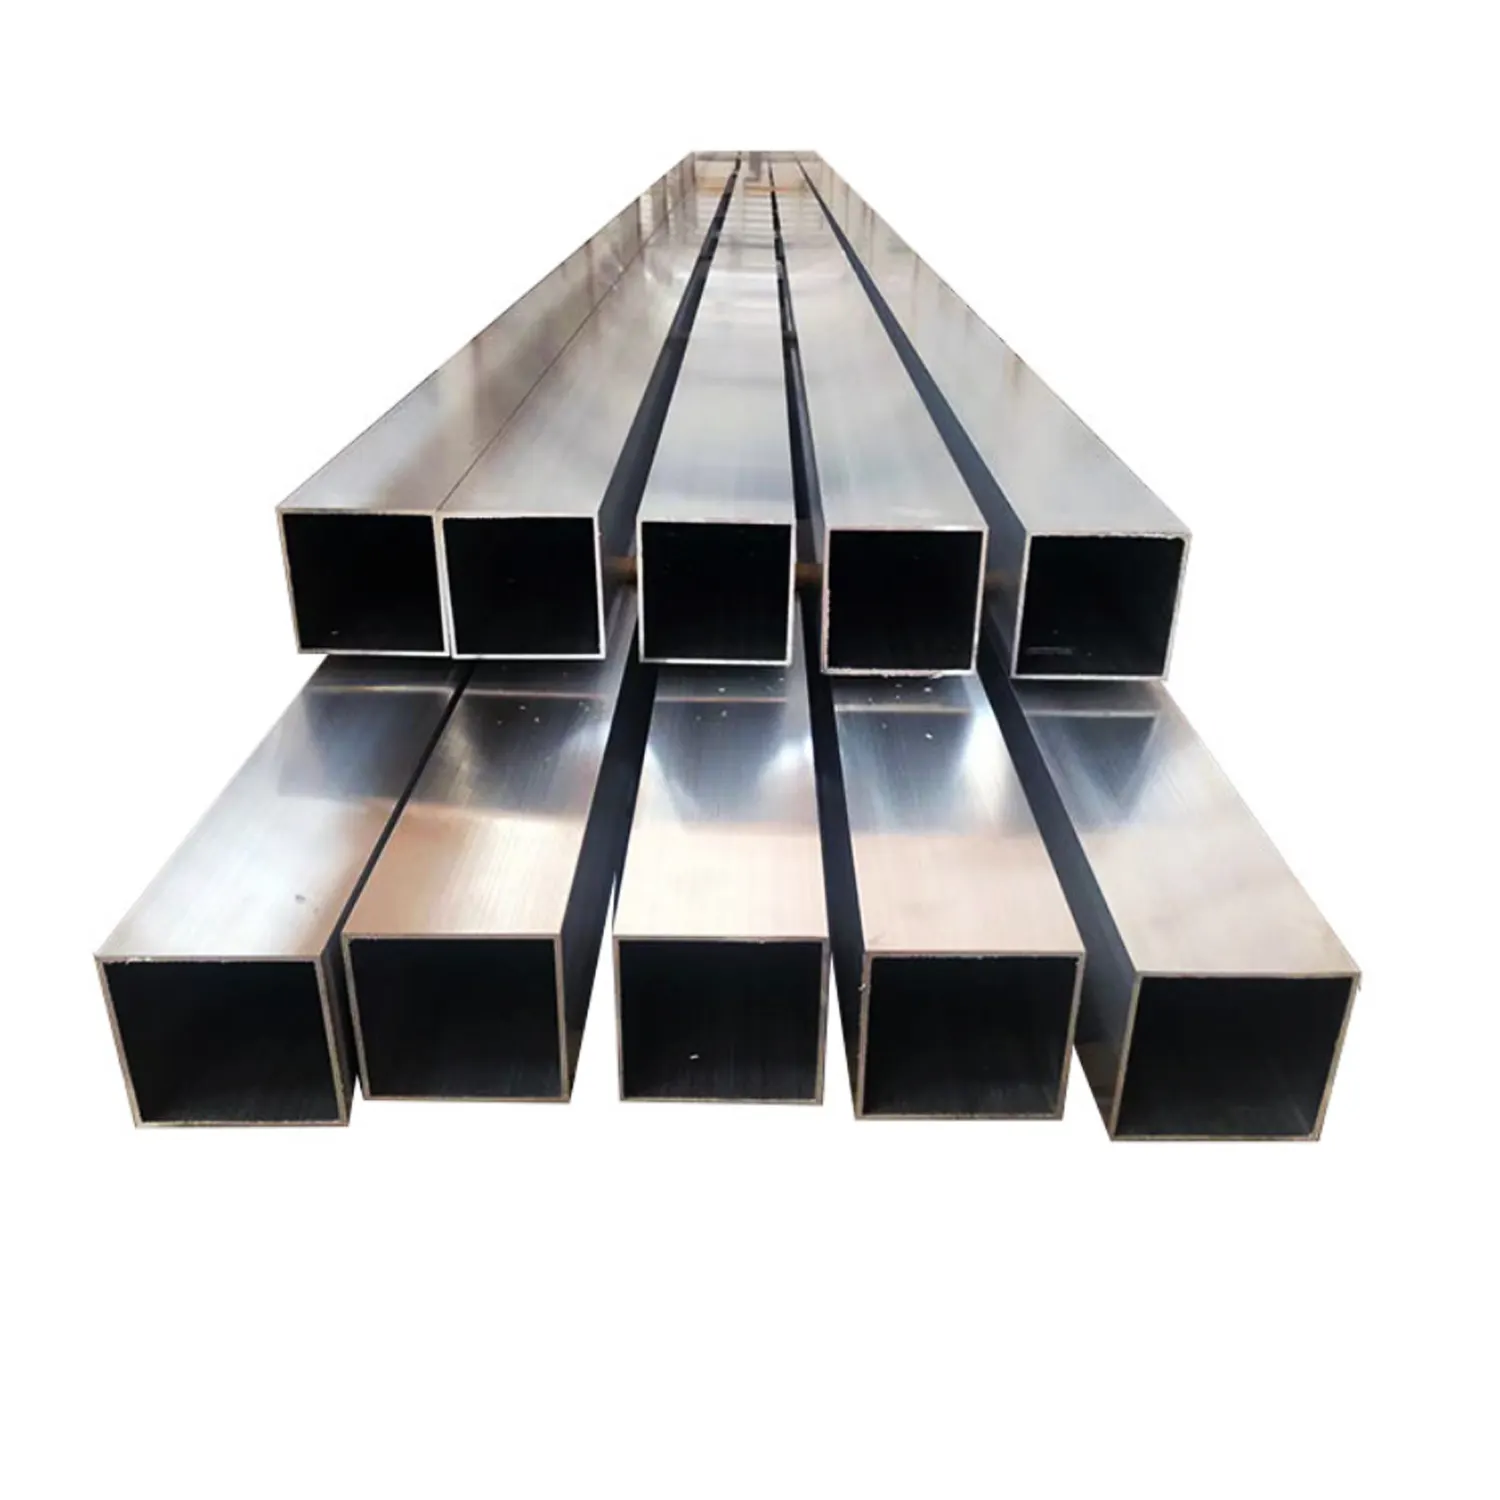 Produsen aluminium 6063 tabung persegi panjang aluminium dari berbagai ukuran dan spesifikasi